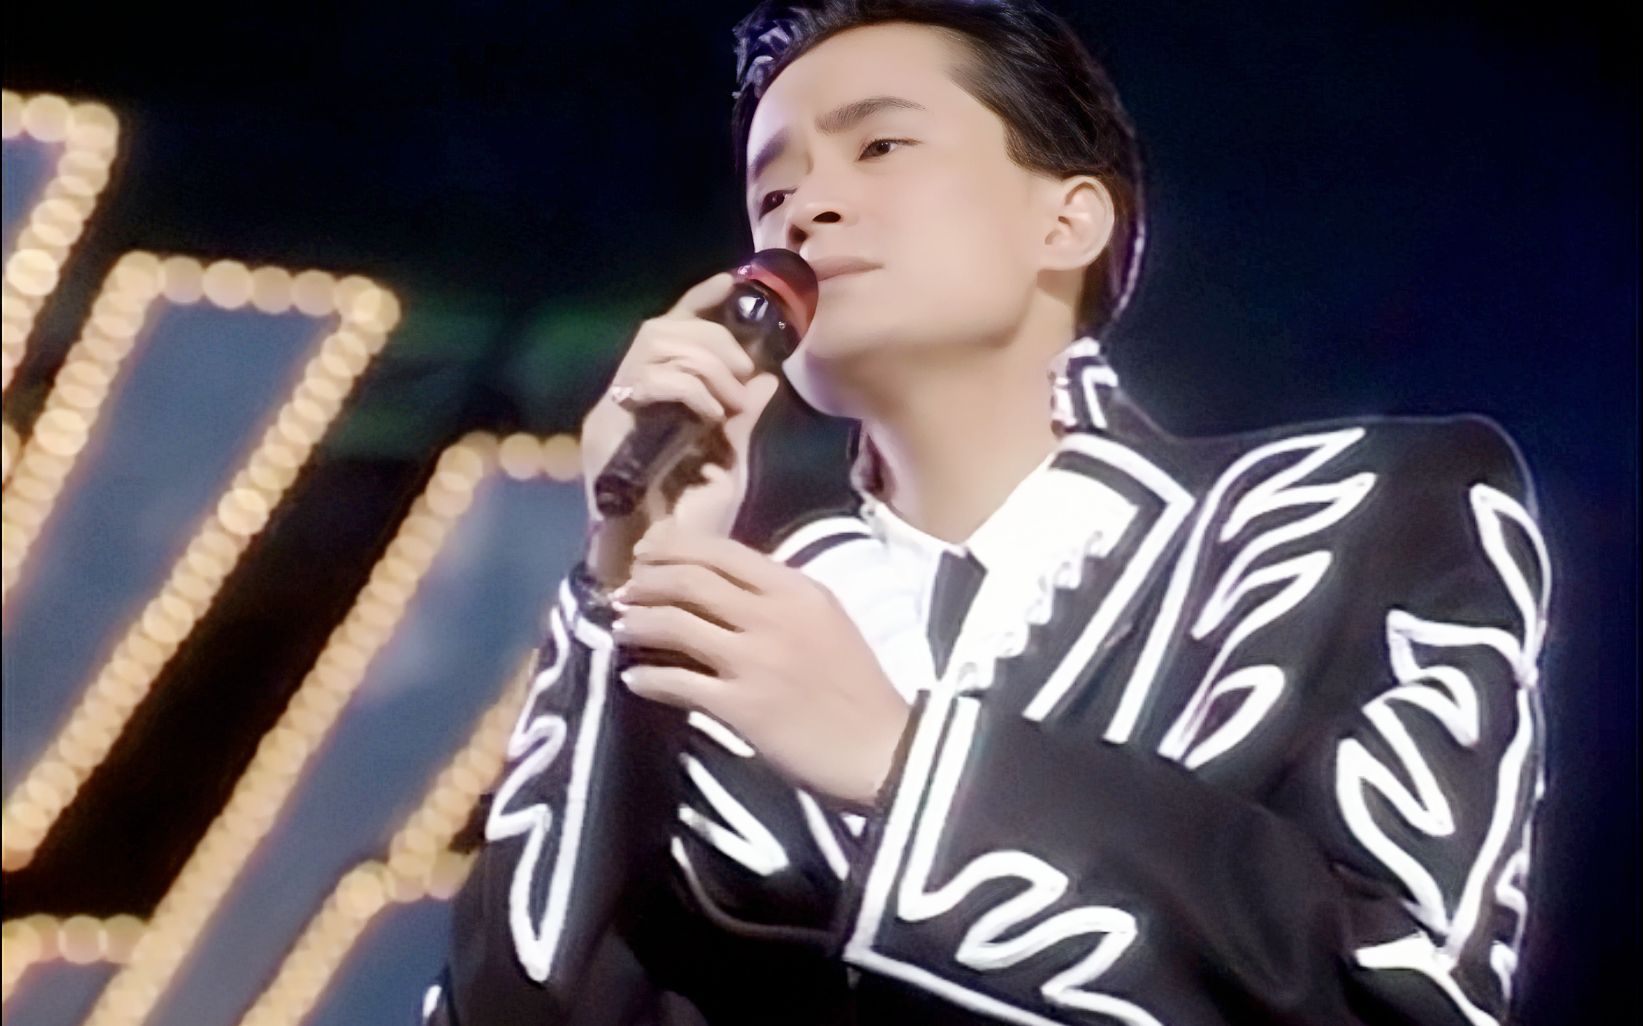 问你——陈汝佳在1989亚太歌赛上演唱的比赛曲目